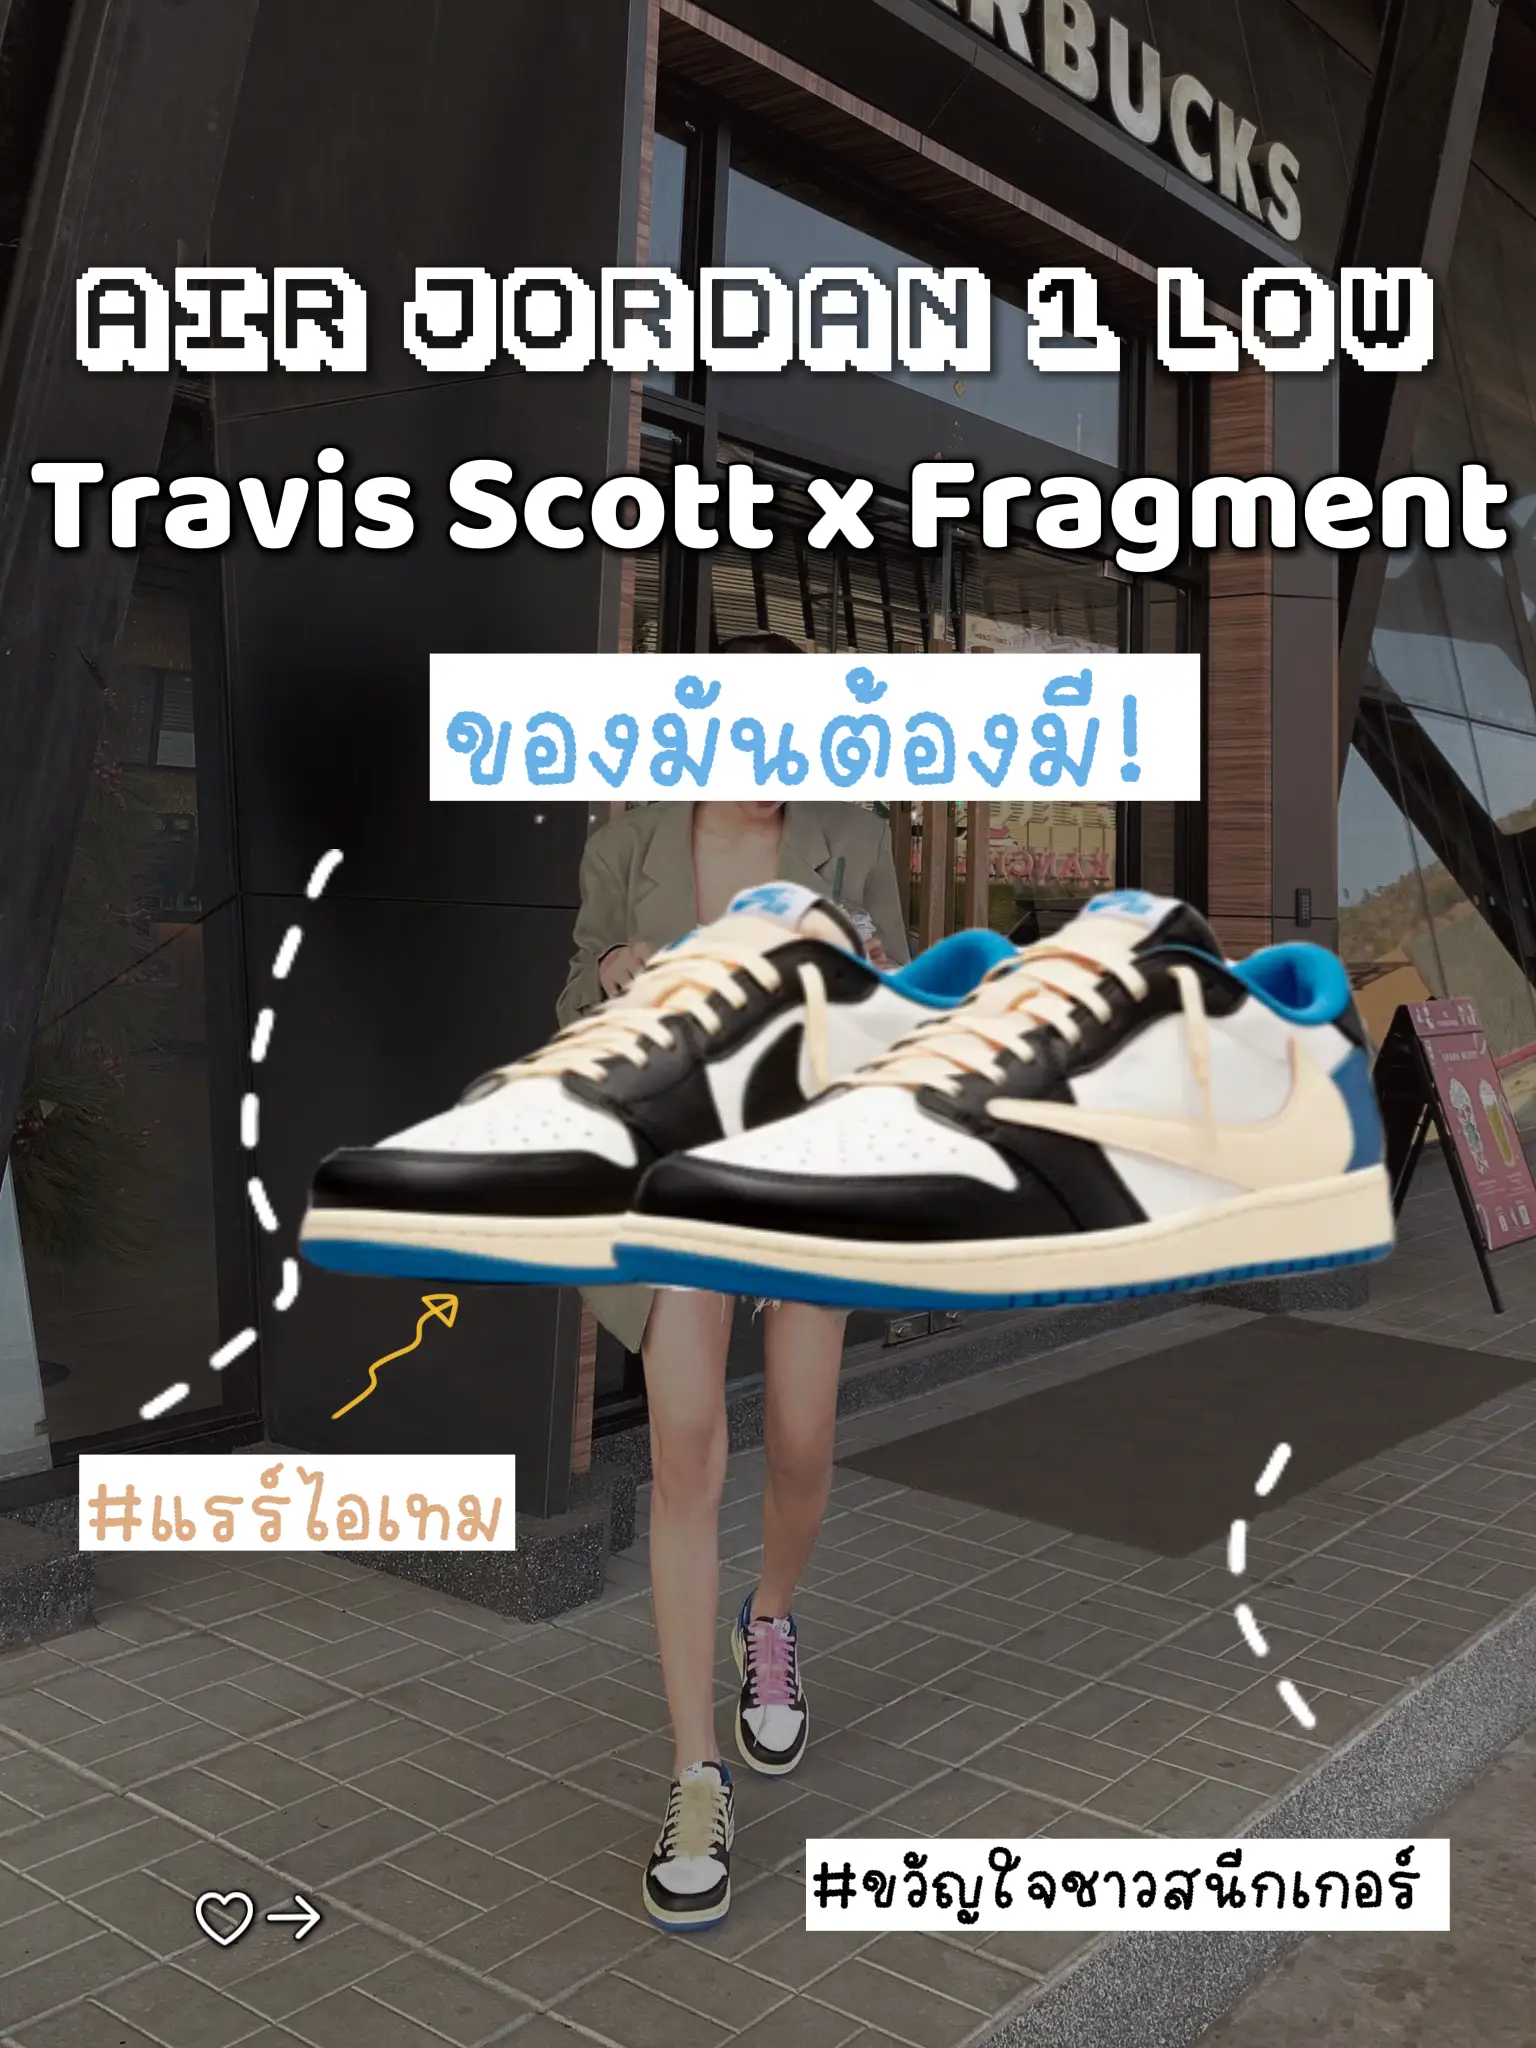 Travis Scott x fragment x Air Jordan 1 Low On-Foot Look